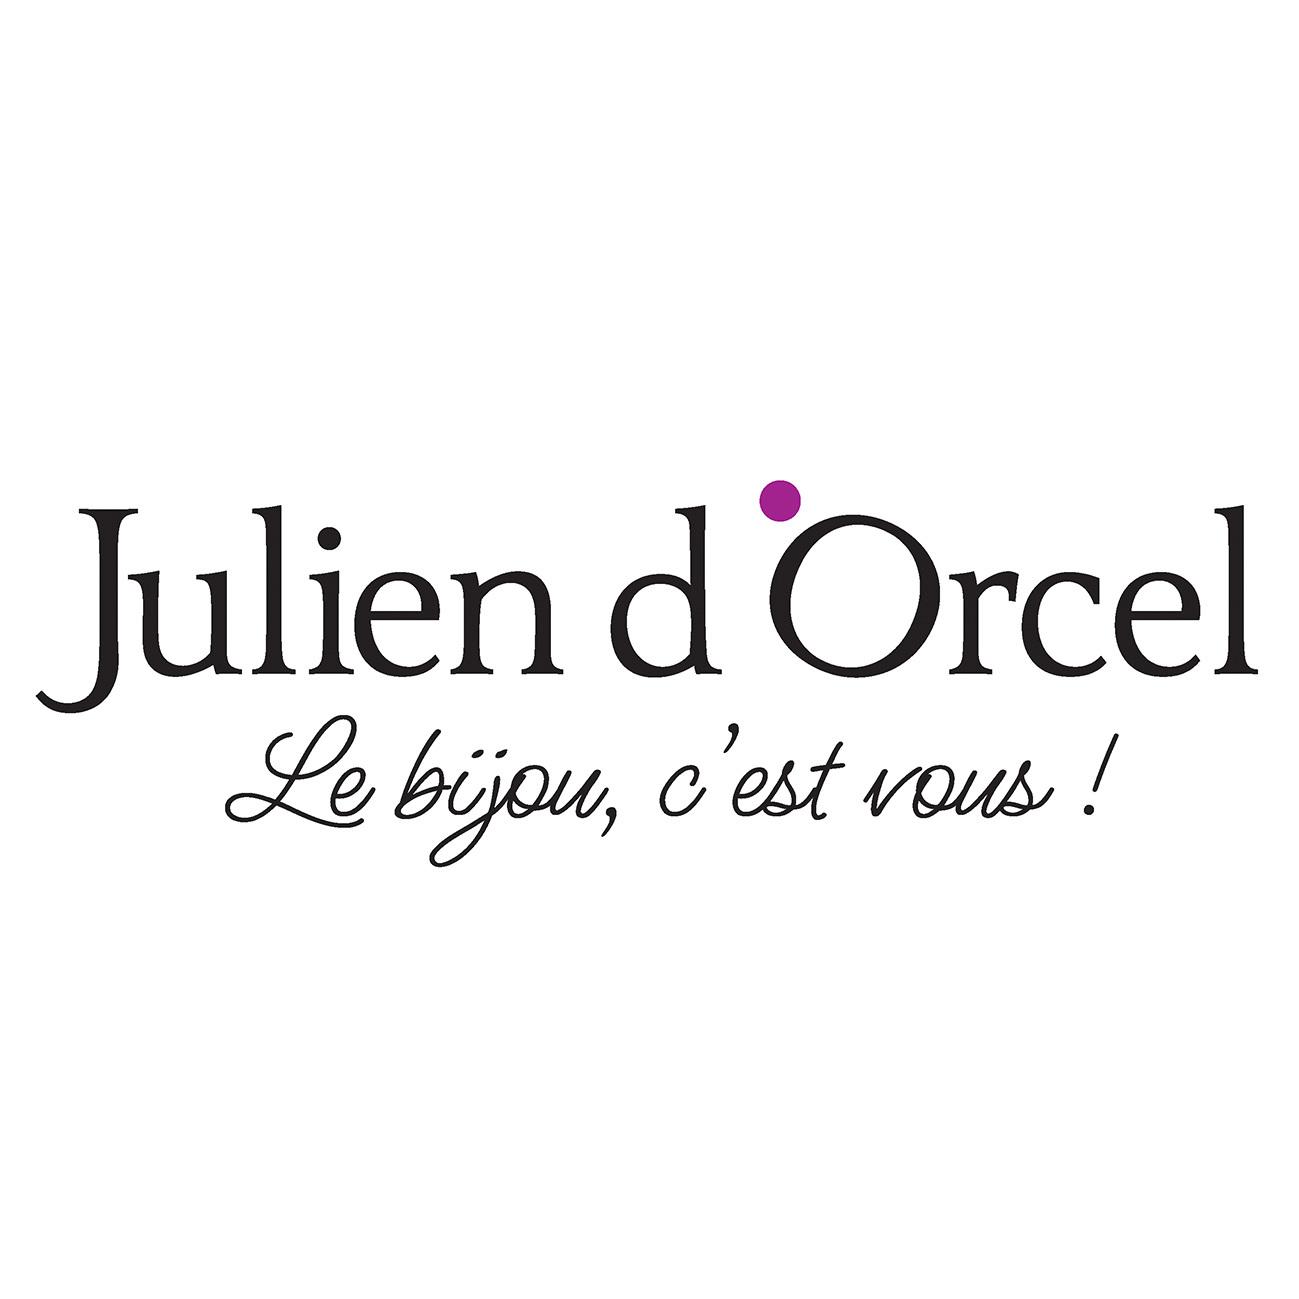 Julien D'orcel Toulouse